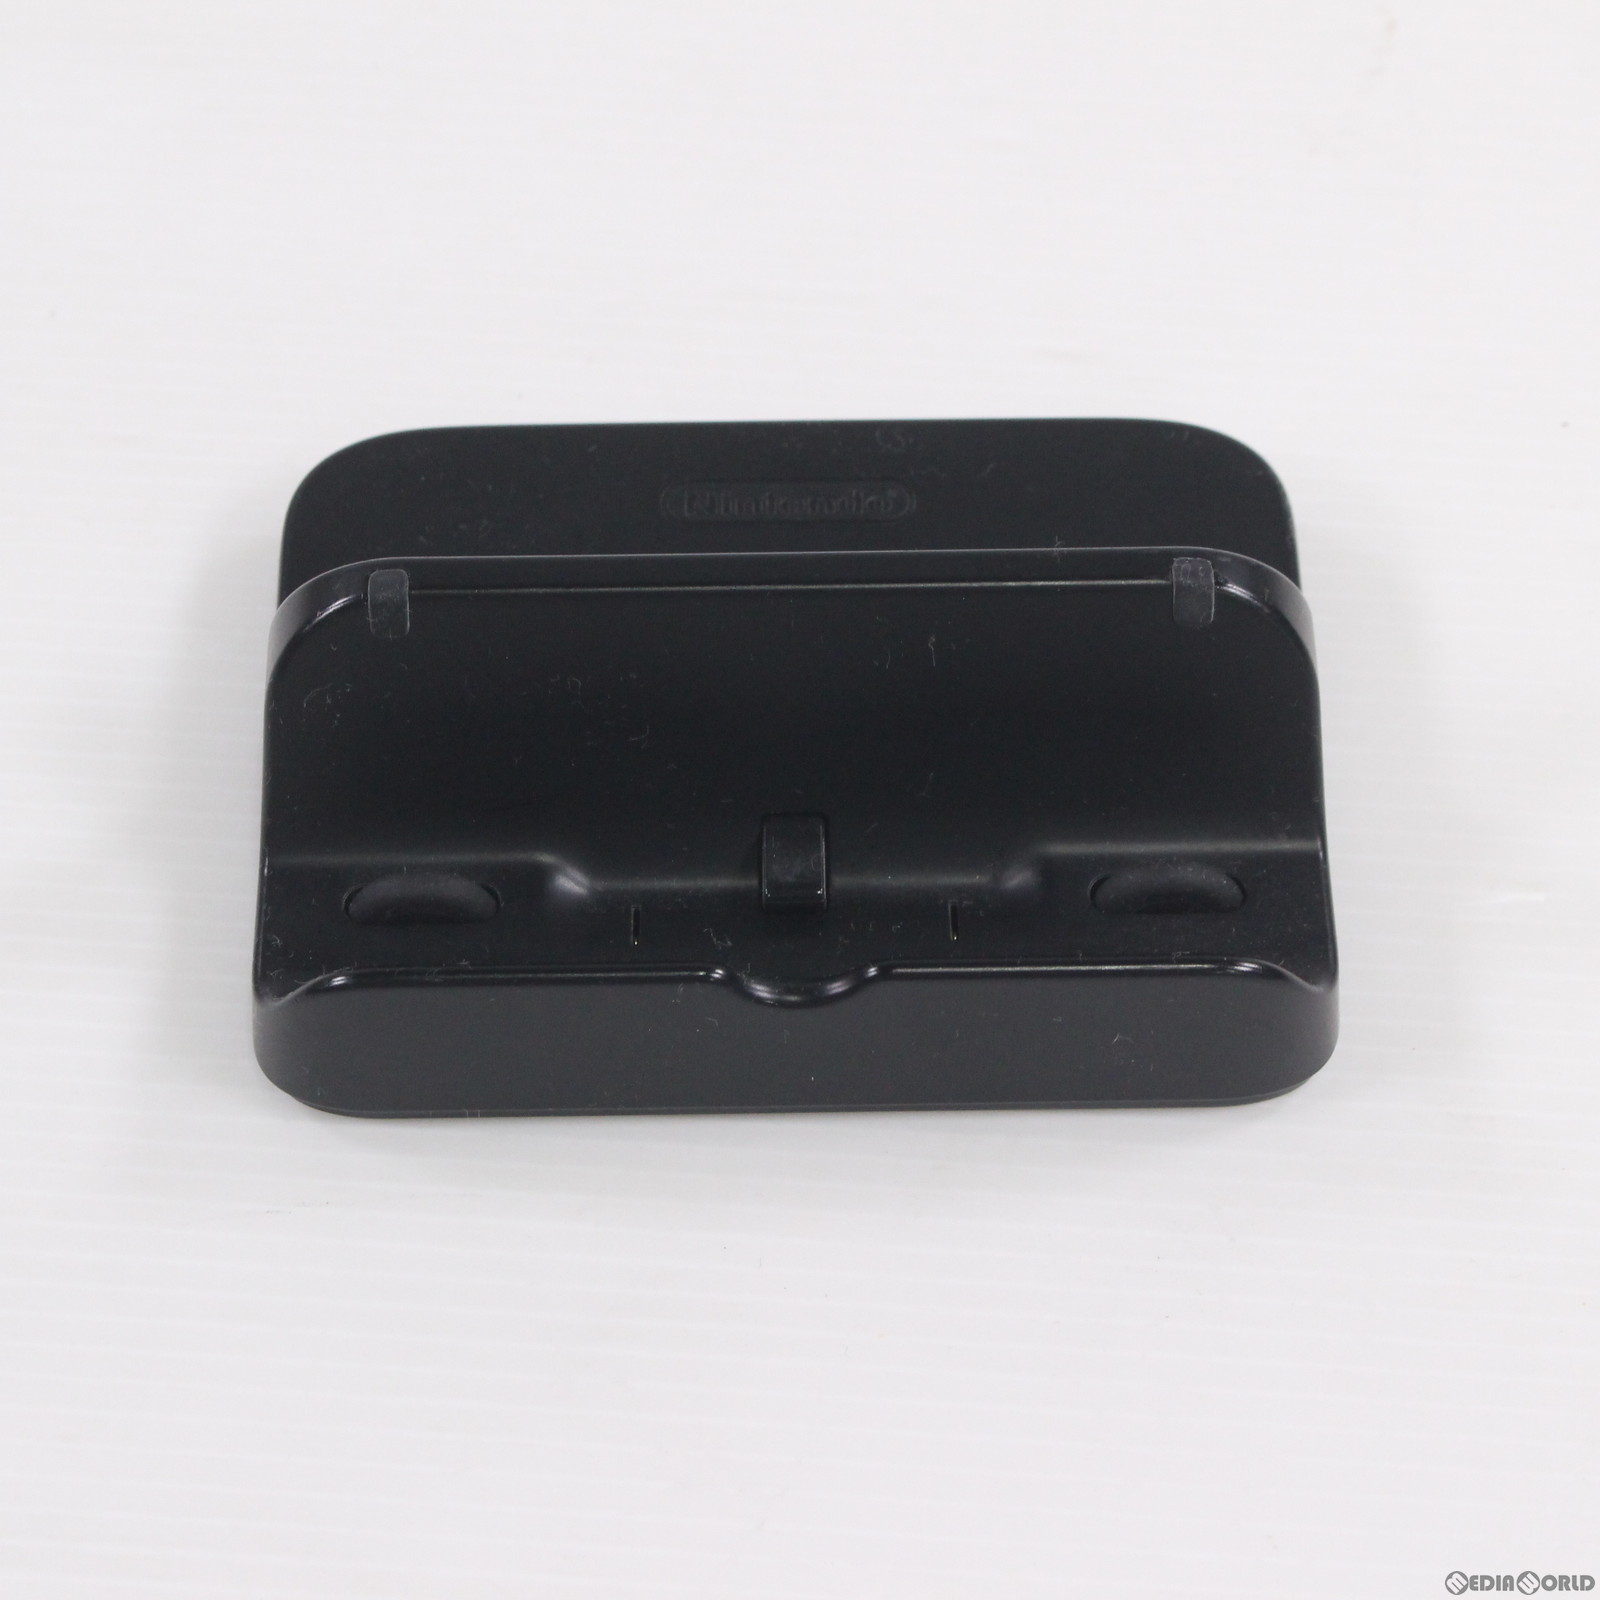 【中古即納】[ACC][WiiU]Wii U GamePad(Wii U ゲームパッド)充電スタンド 任天堂純正品(WUP-014)(20121208)